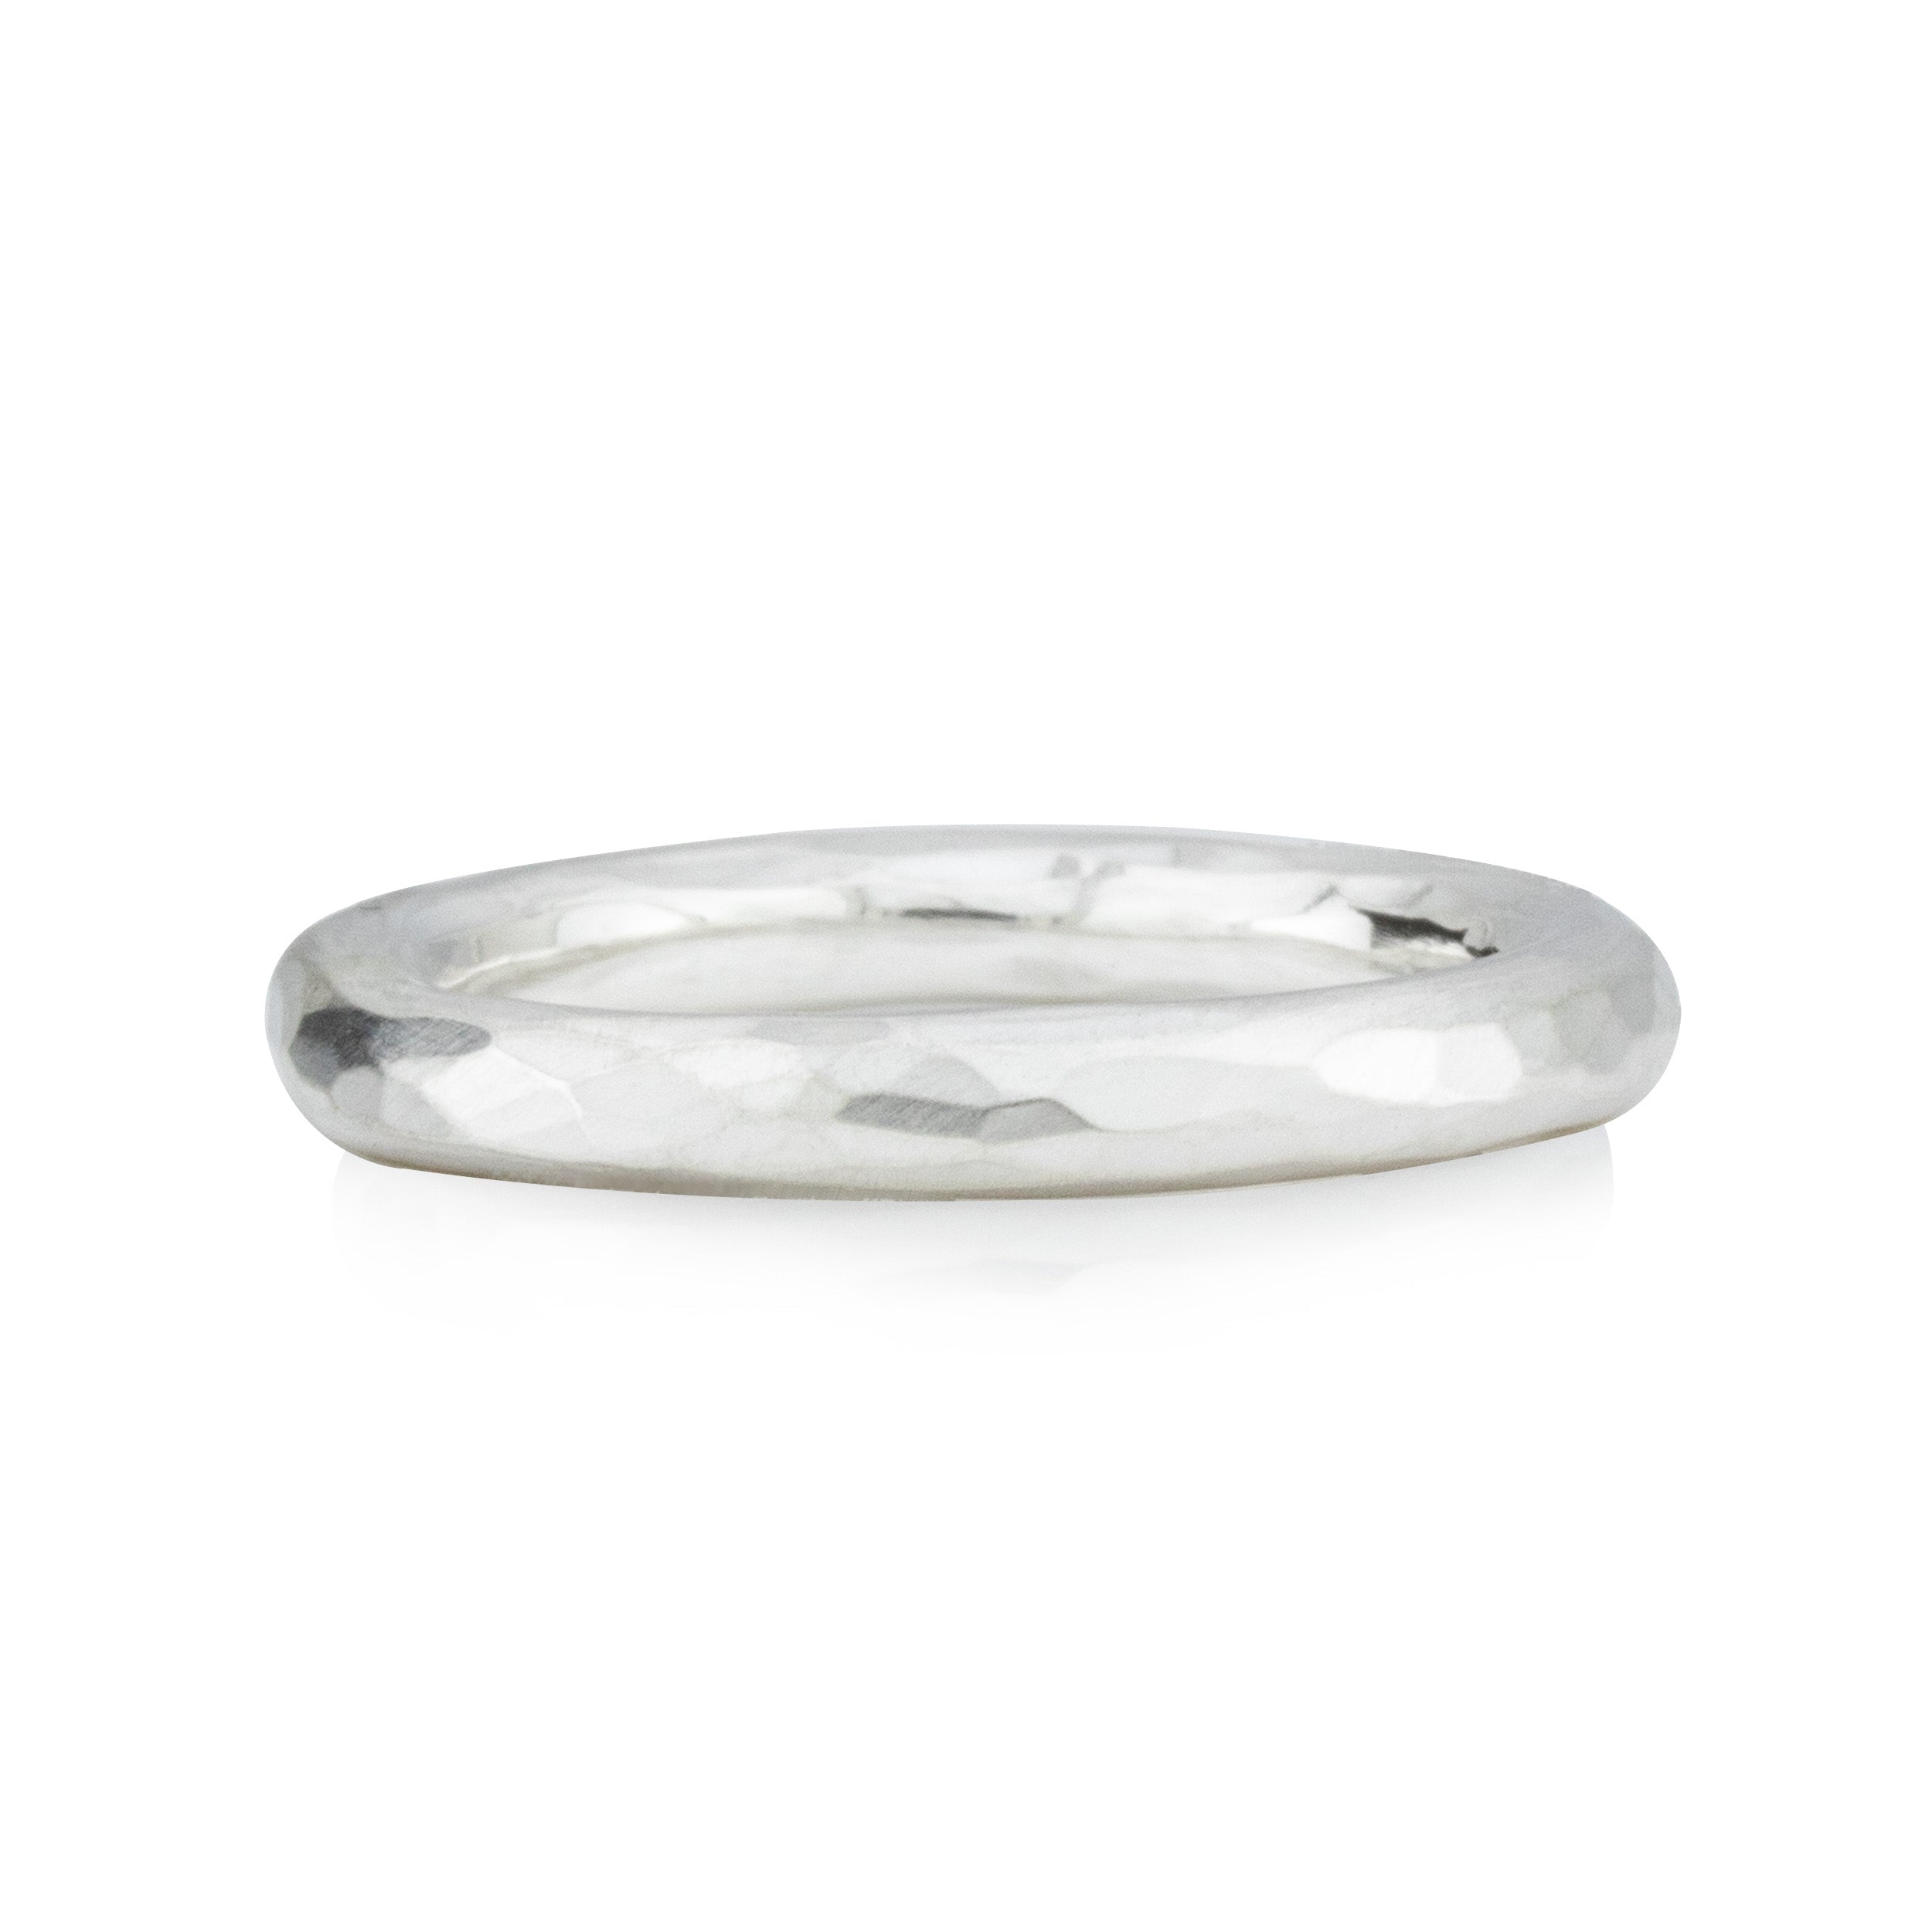 Silberring, rundes Profil, geschmiedet - 3 mm